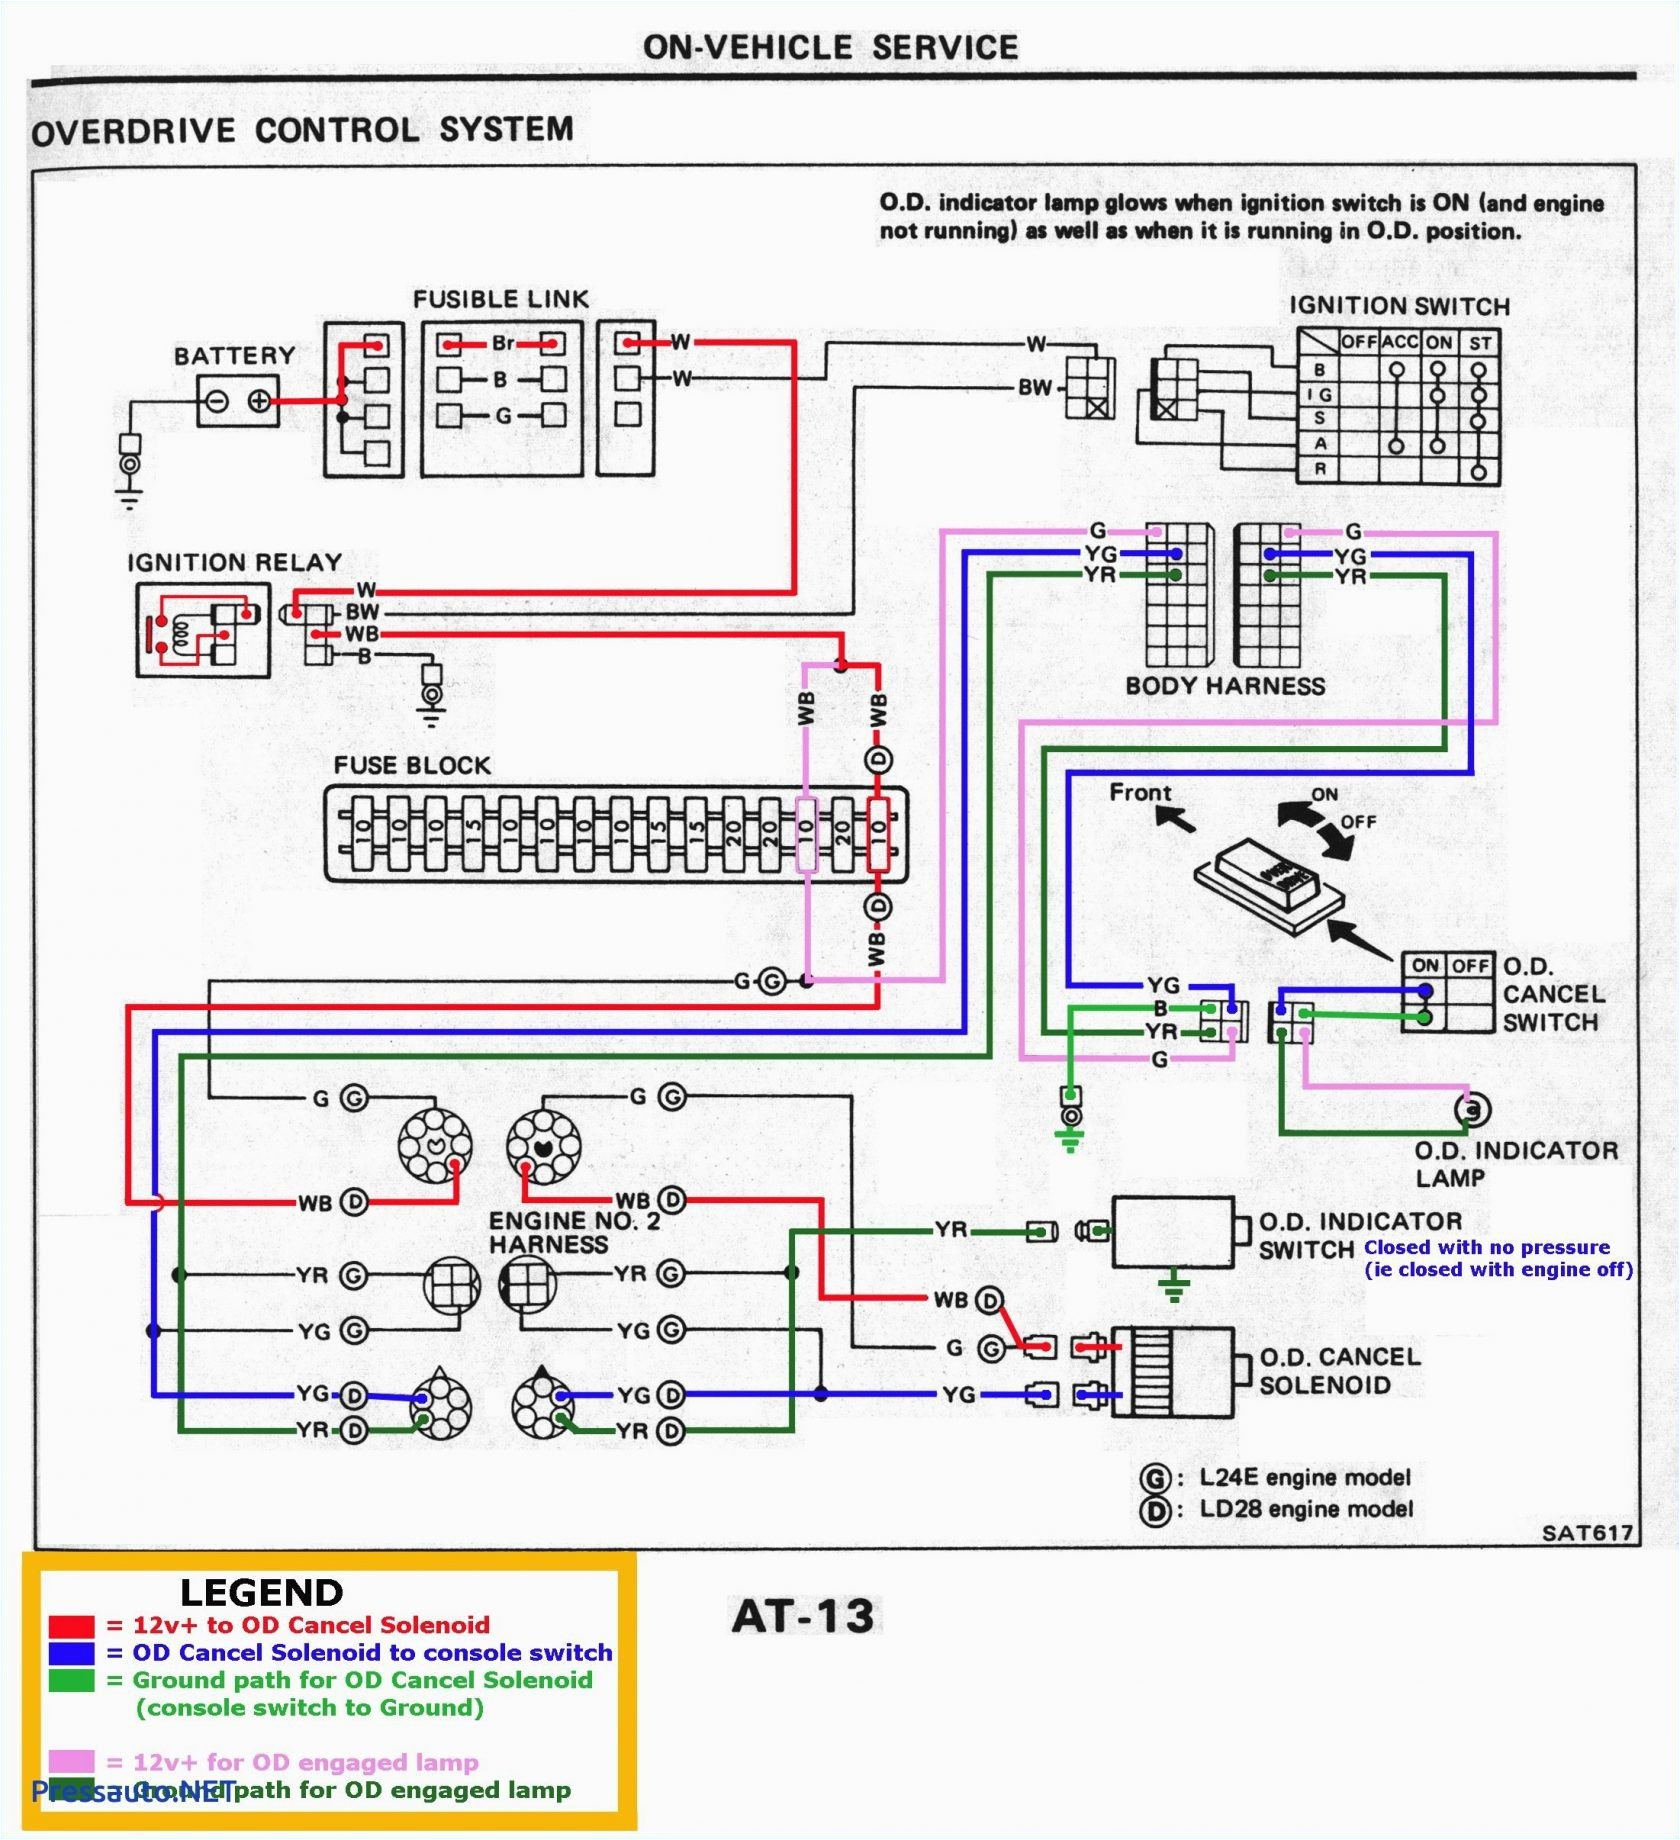 motor wiring diagram 19 wiring diagram page motor wiring diagrams 12 lead motor wiring diagram 19